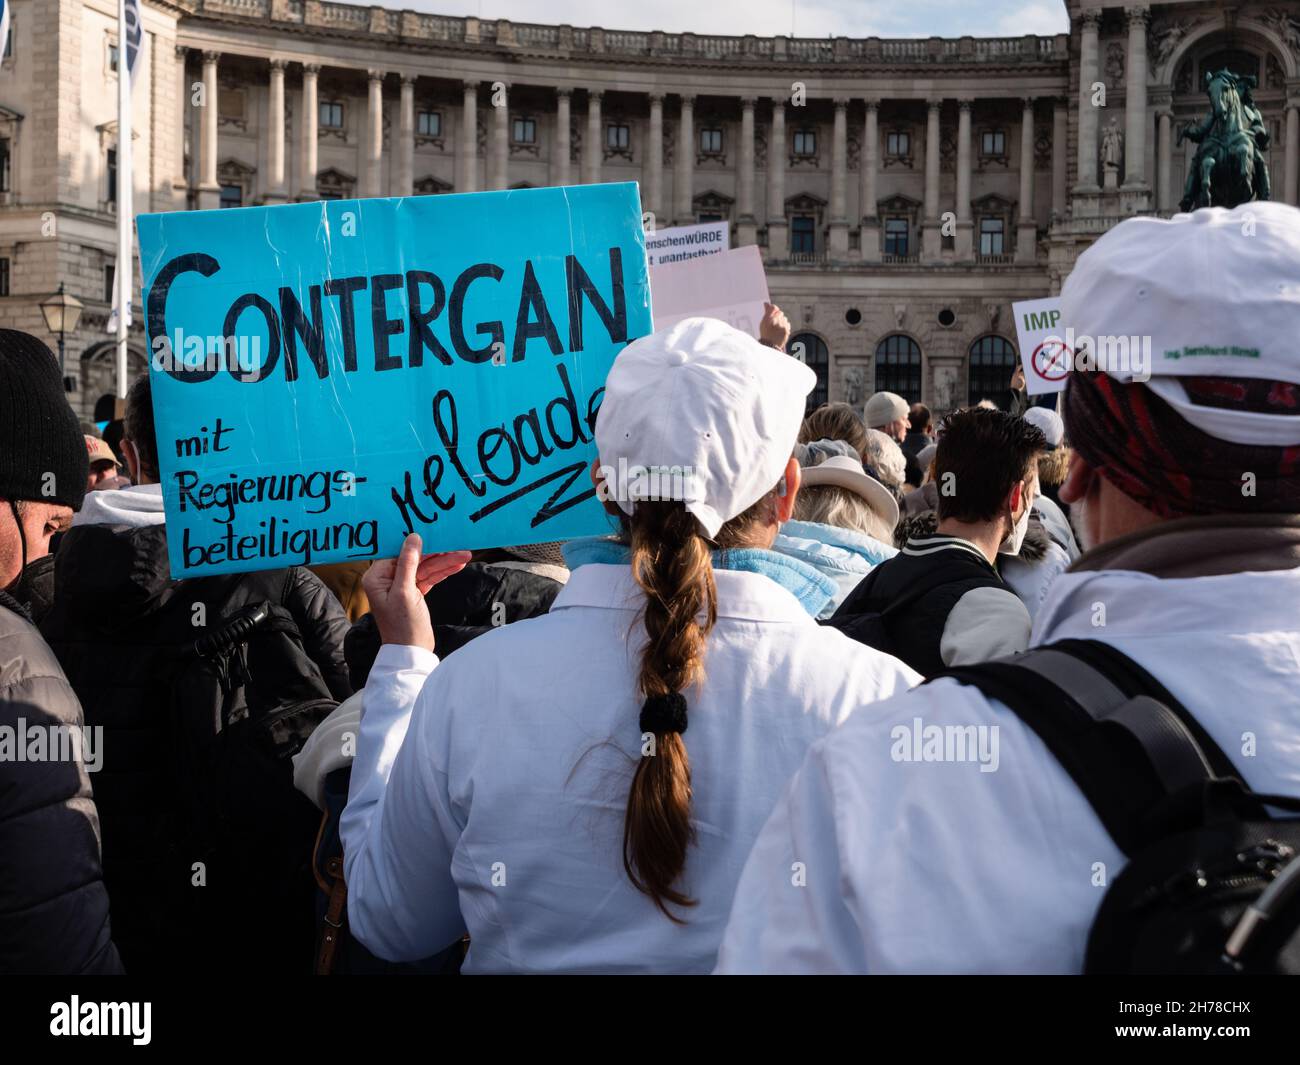 Vienne, Autriche - novembre 20 2021 : manifestant contre la vaccination lors de la manifestation sur Heldenplatz à Vienne, tenir le panneau « Contergan Reloaded ». Banque D'Images